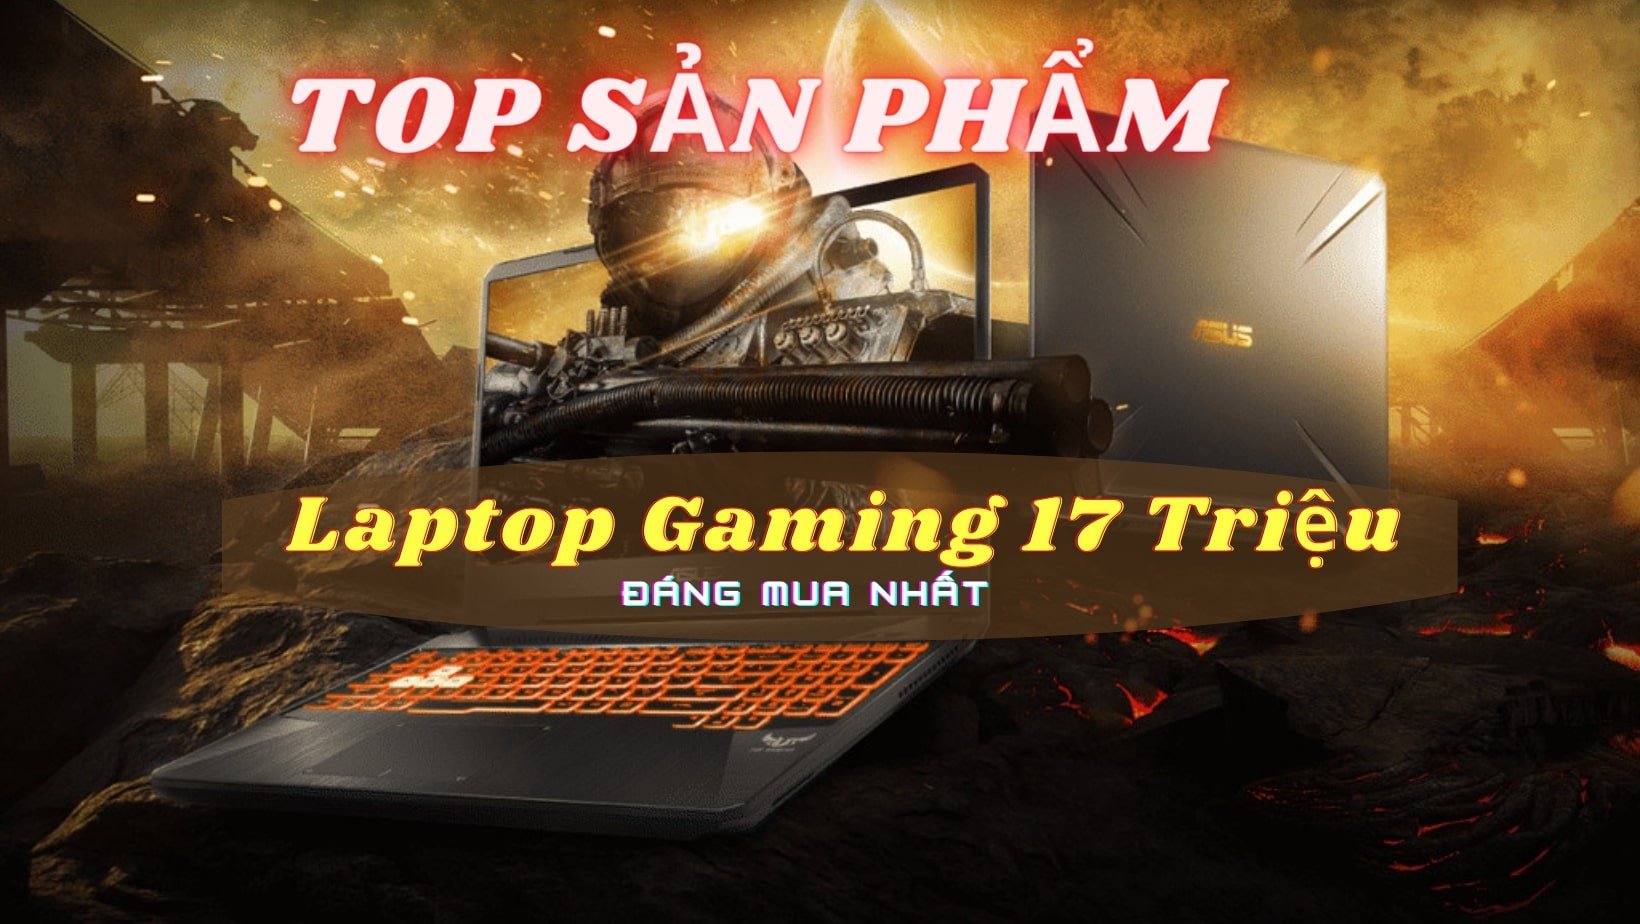 Top Sản Phẩm Laptop Gaming 17 Triệu Đáng Mua Nhất